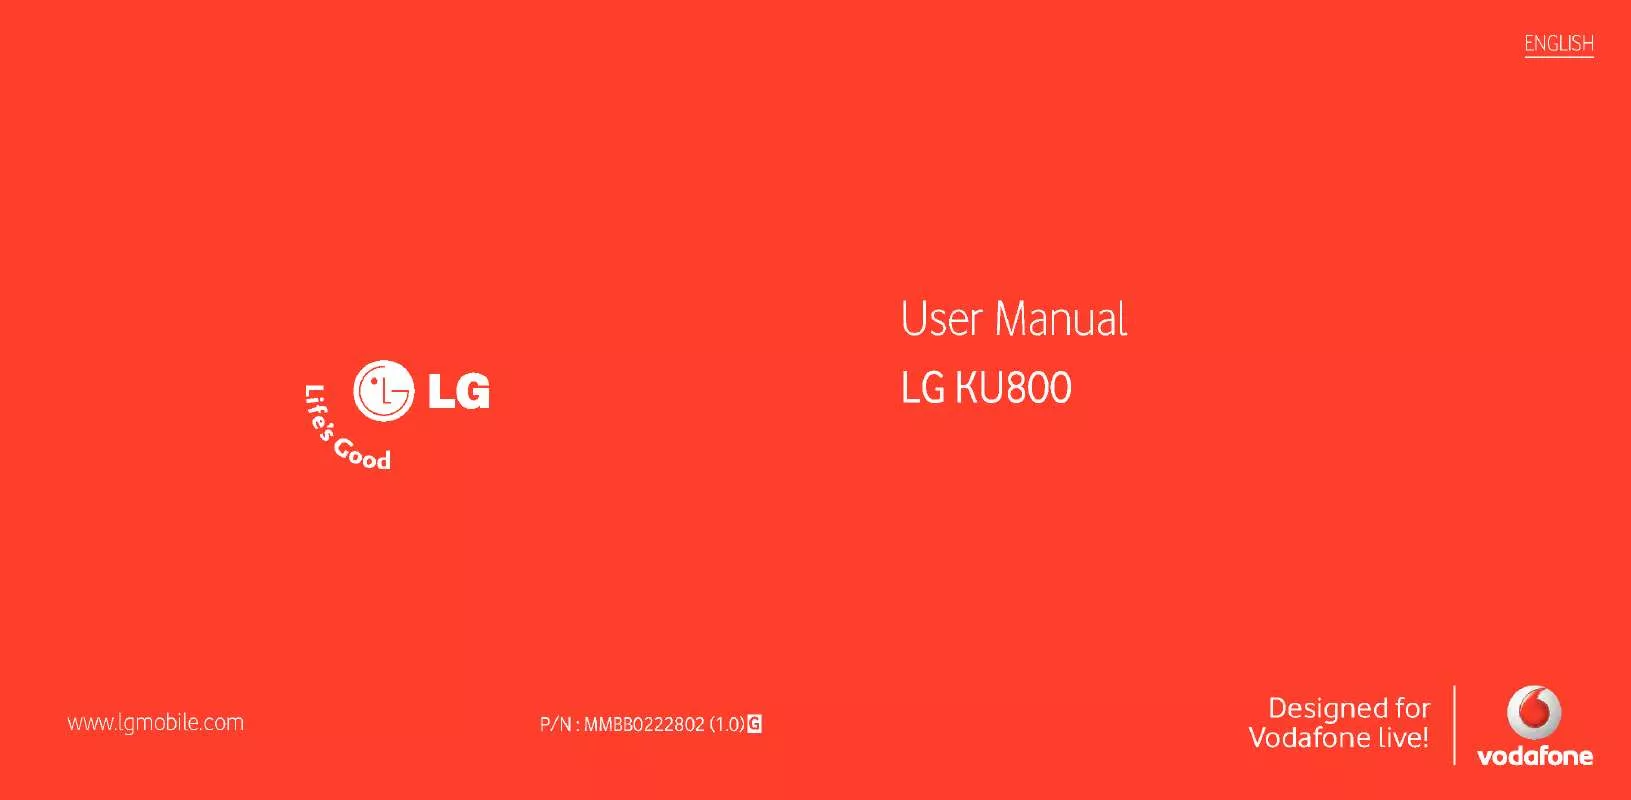 Mode d'emploi LG KU800